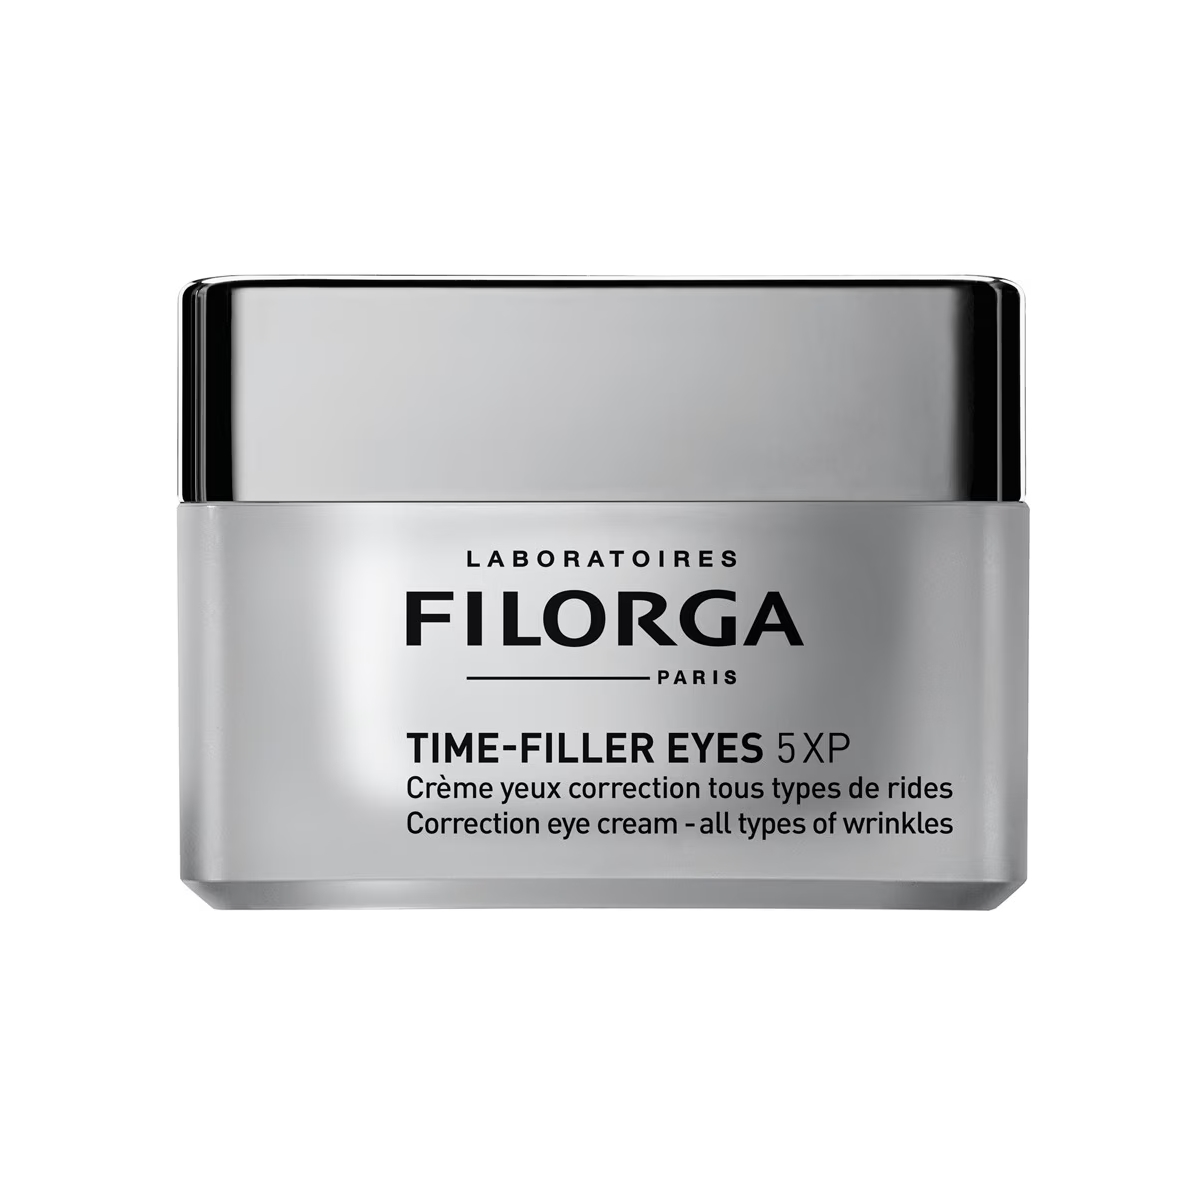 Contorno de ojos Time-Filler Eyes 5XP de Filorga.